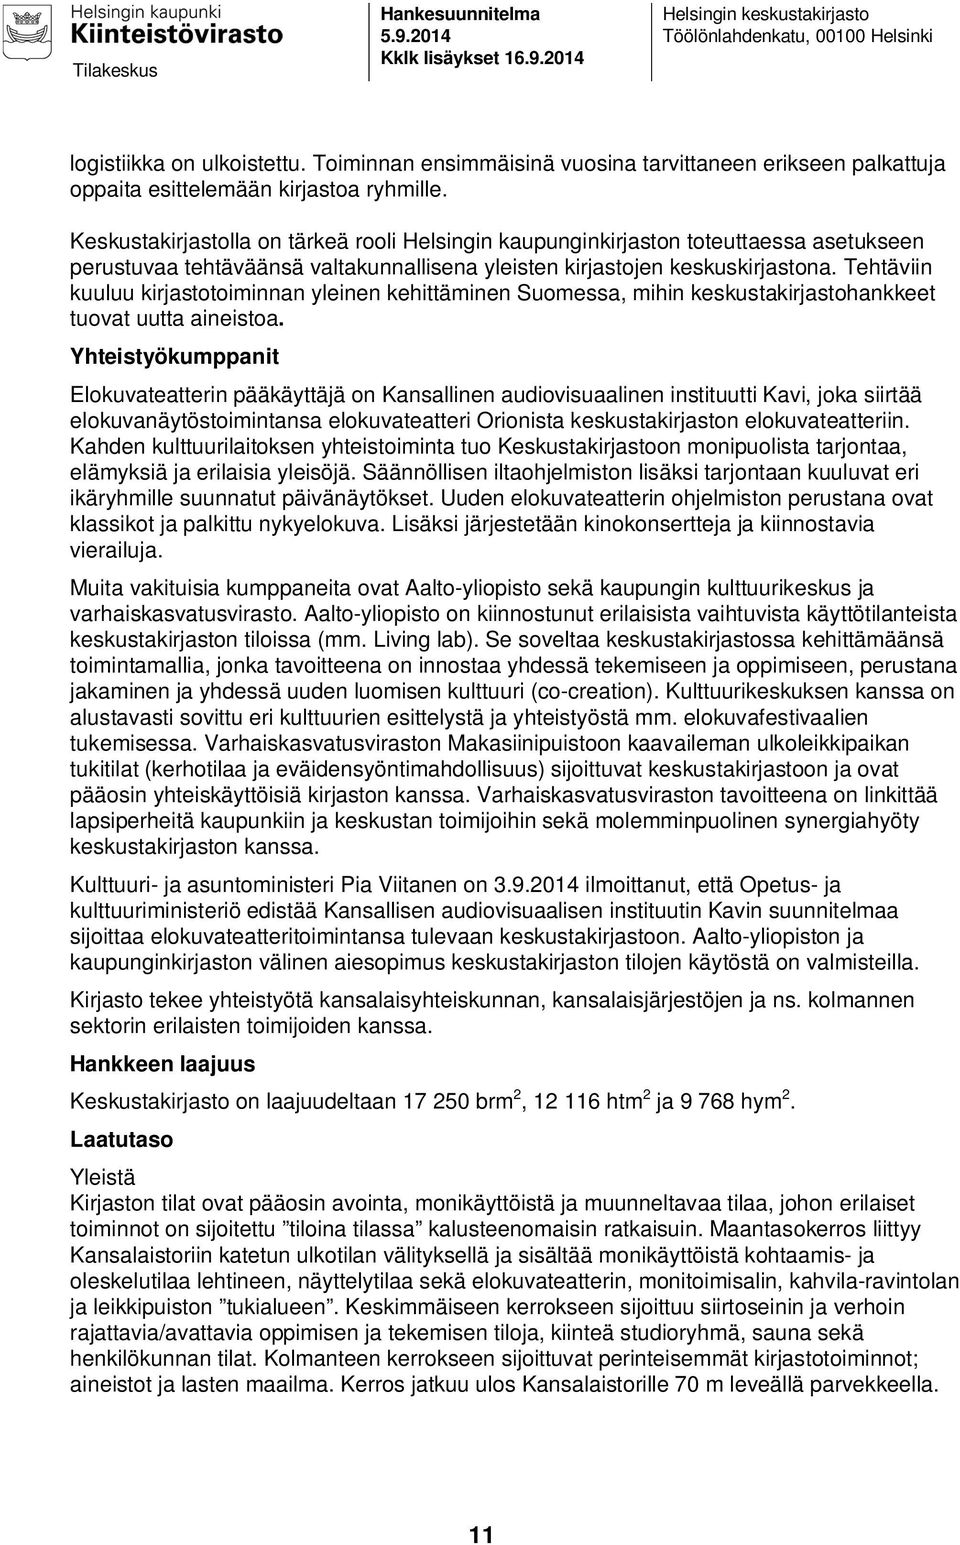 Keskustakirjastolla on tärkeä rooli Helsingin kaupunginkirjaston toteuttaessa asetukseen perustuvaa tehtäväänsä valtakunnallisena yleisten kirjastojen keskuskirjastona.